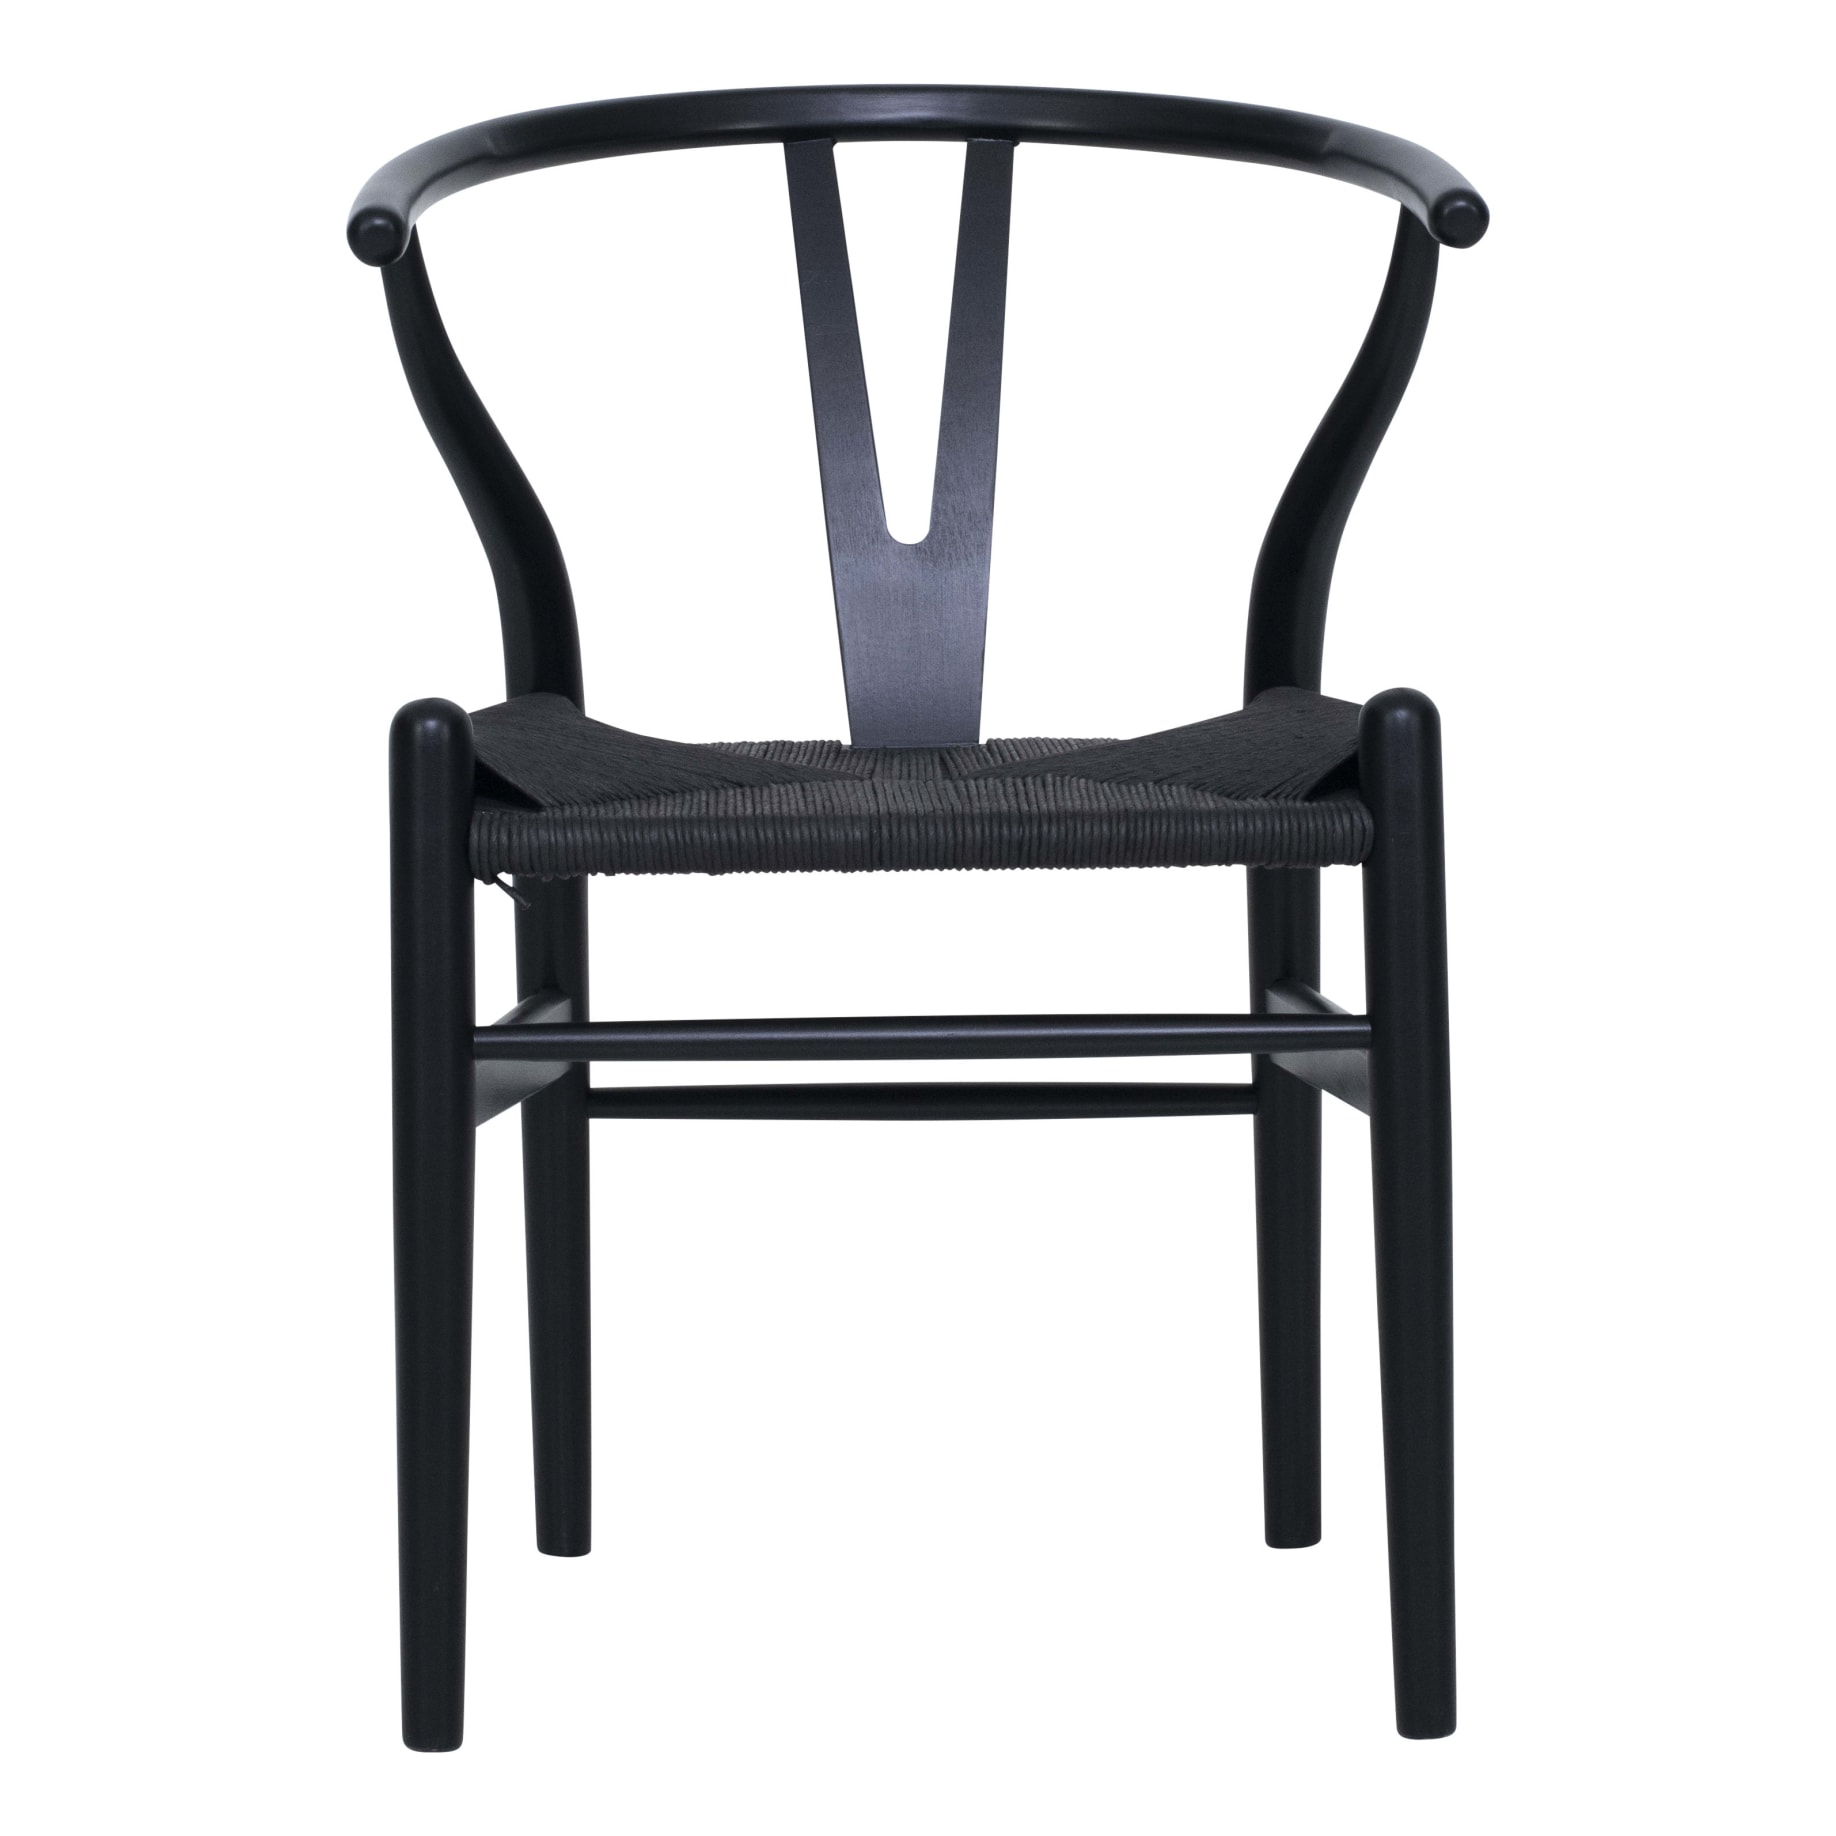 Megs Wishbone Chair in Black/Black Seat